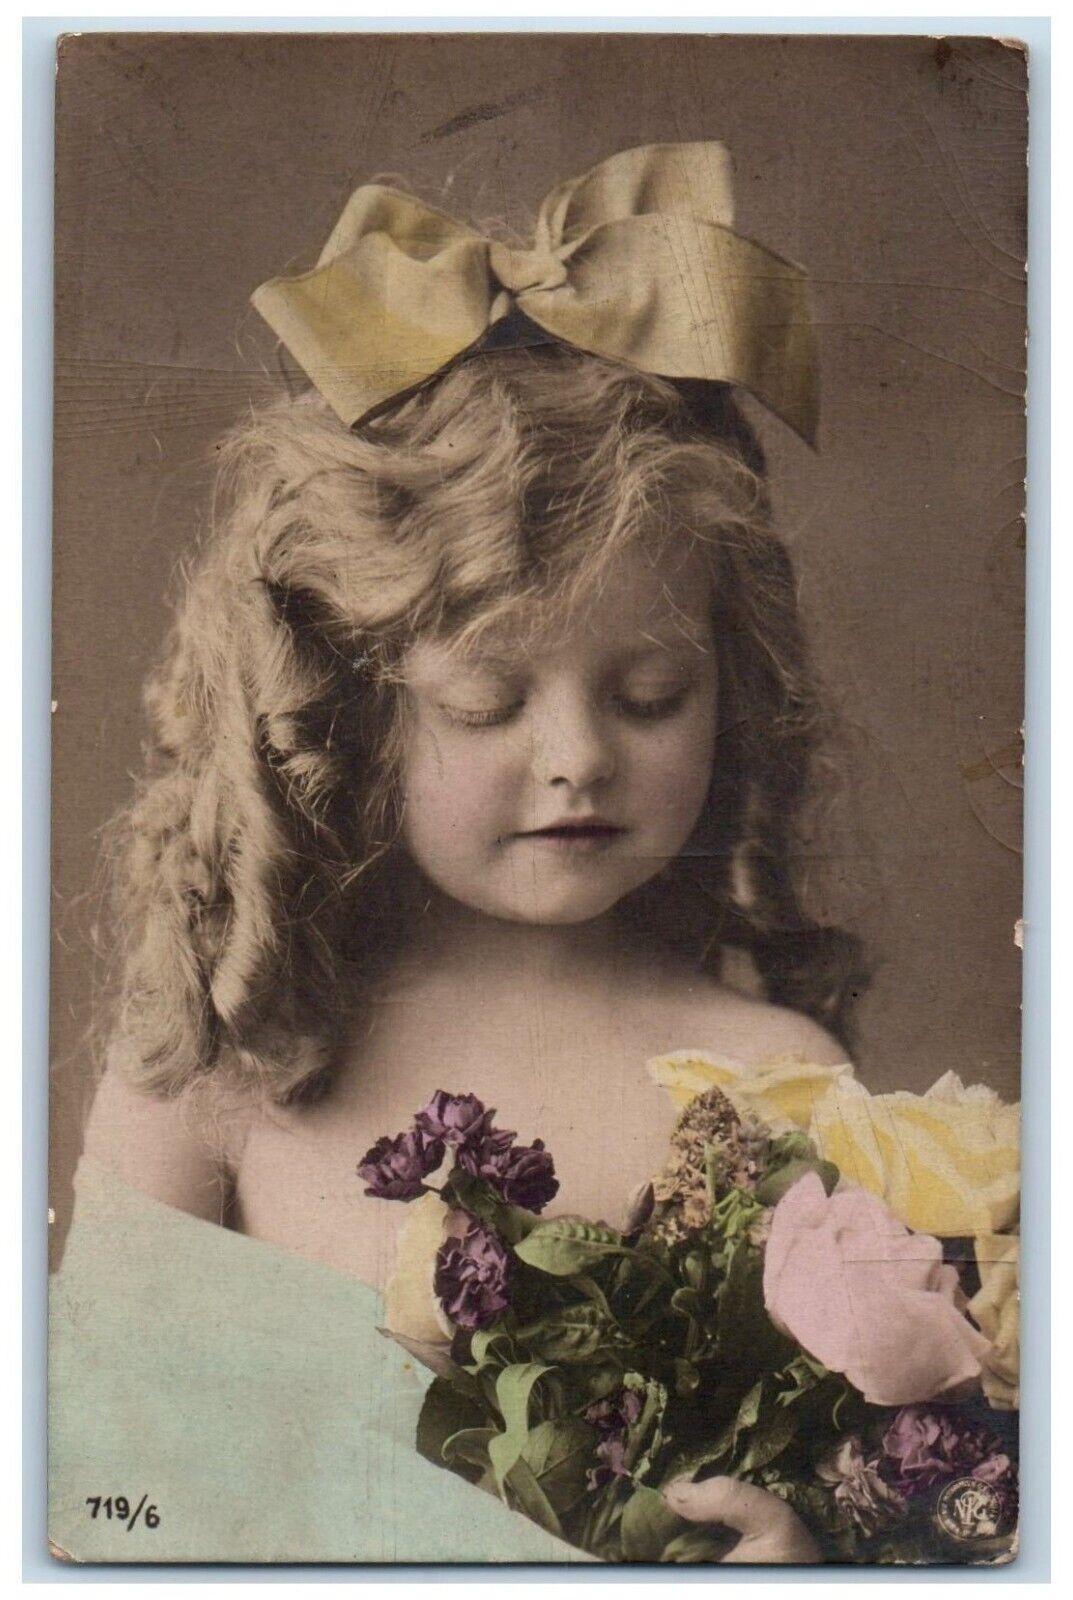 1909 Cute Little Girl Flowers Studio Portrait Alleghany PA RPPC Photo Postcard